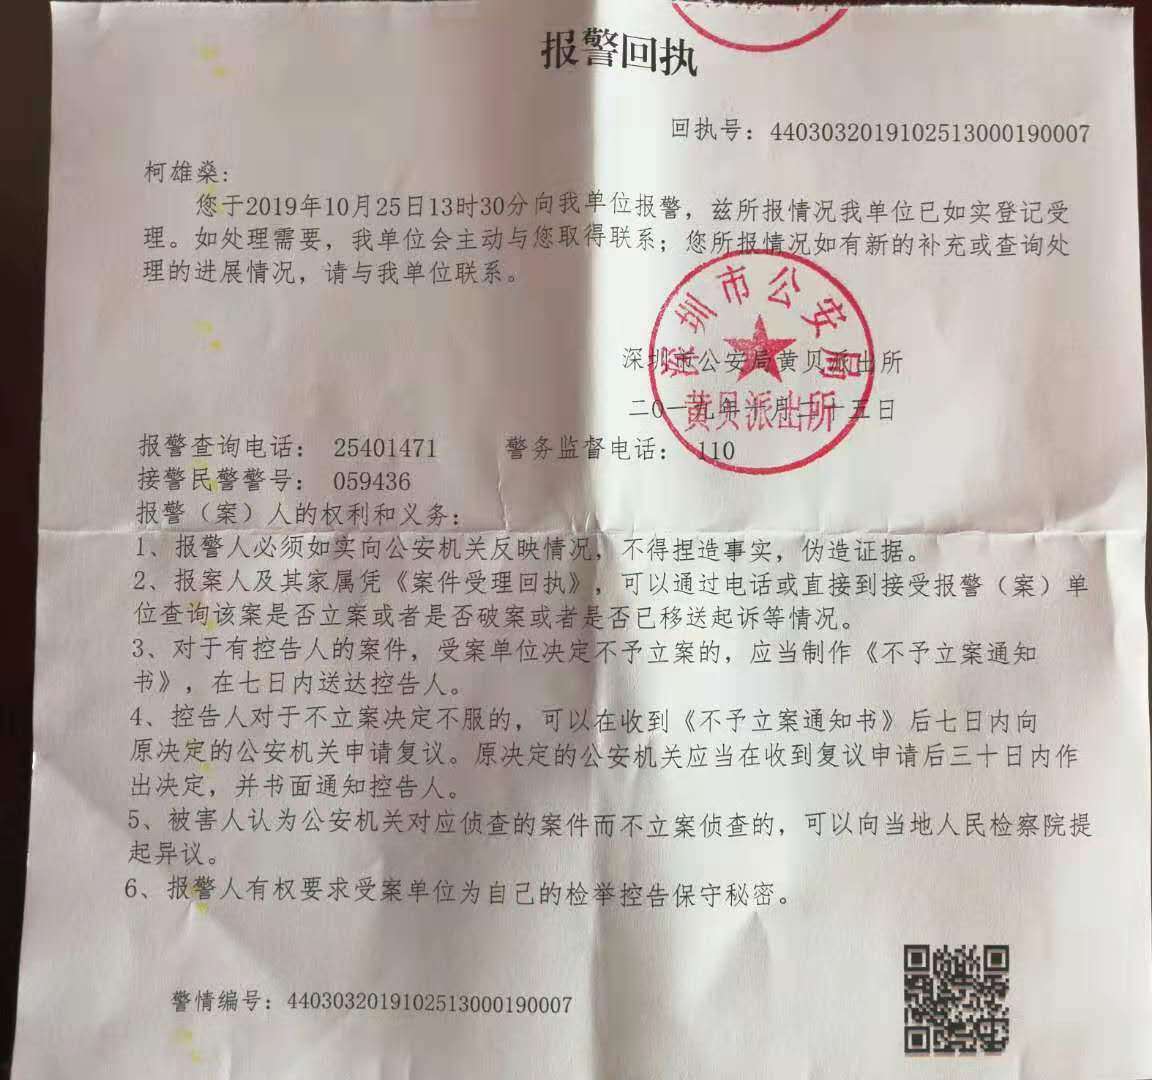 柯雄燊向深圳市公安局罗湖分局提出控告,于当日收到报警回执(报警回执